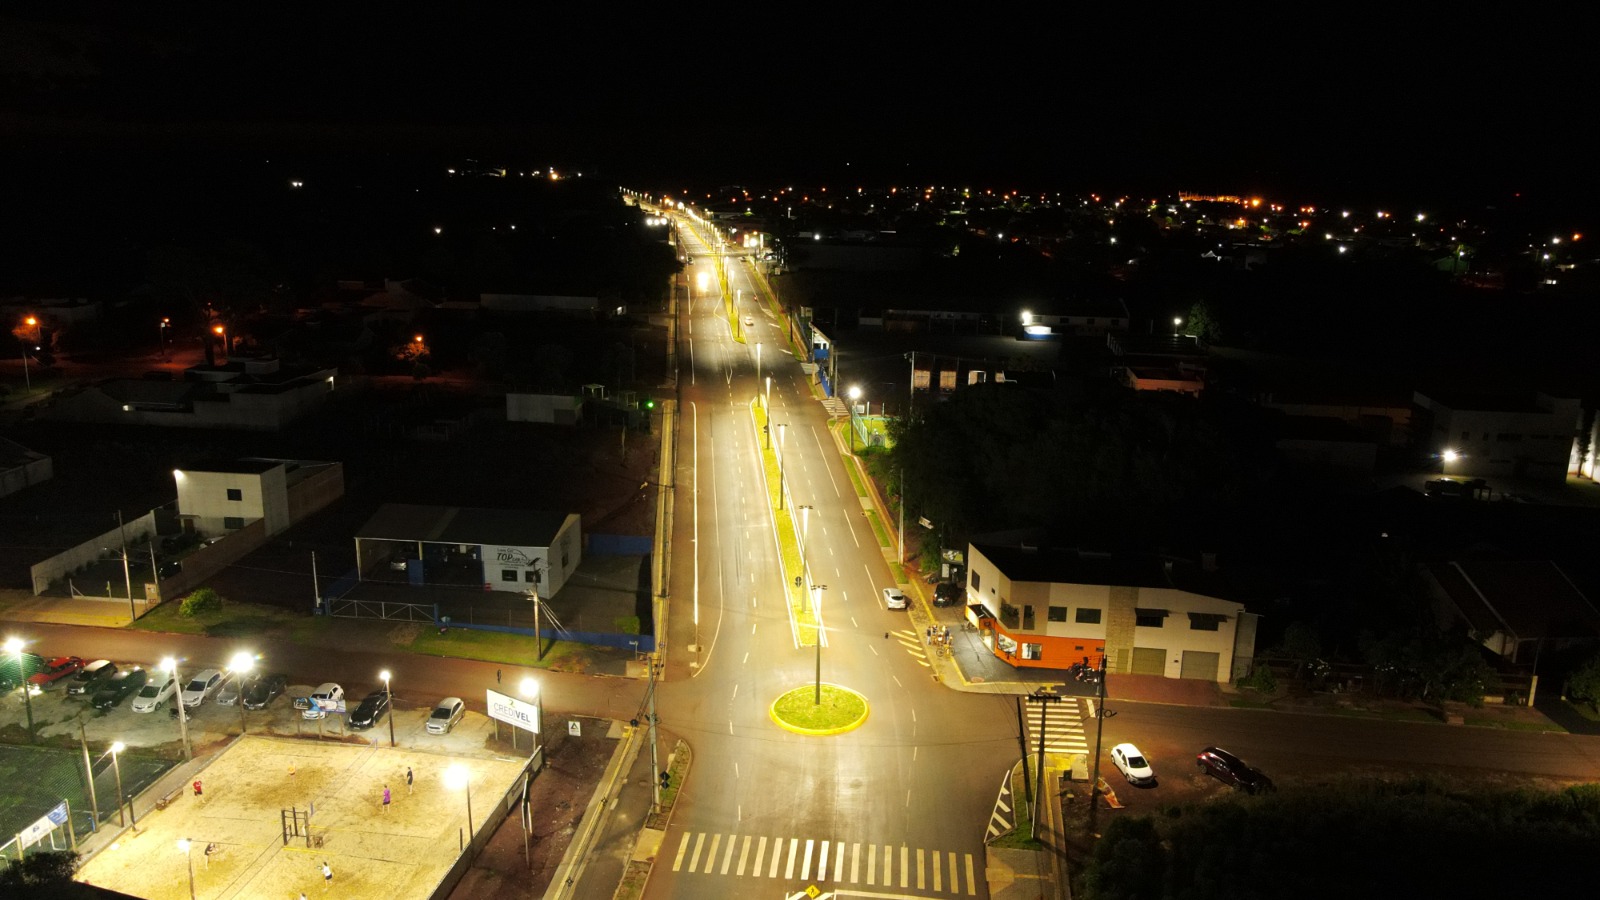 Inauguração da Duplicação da Avenida Rio Grande do Sul em Marechal Cândido Rondon! 🎉🛣️